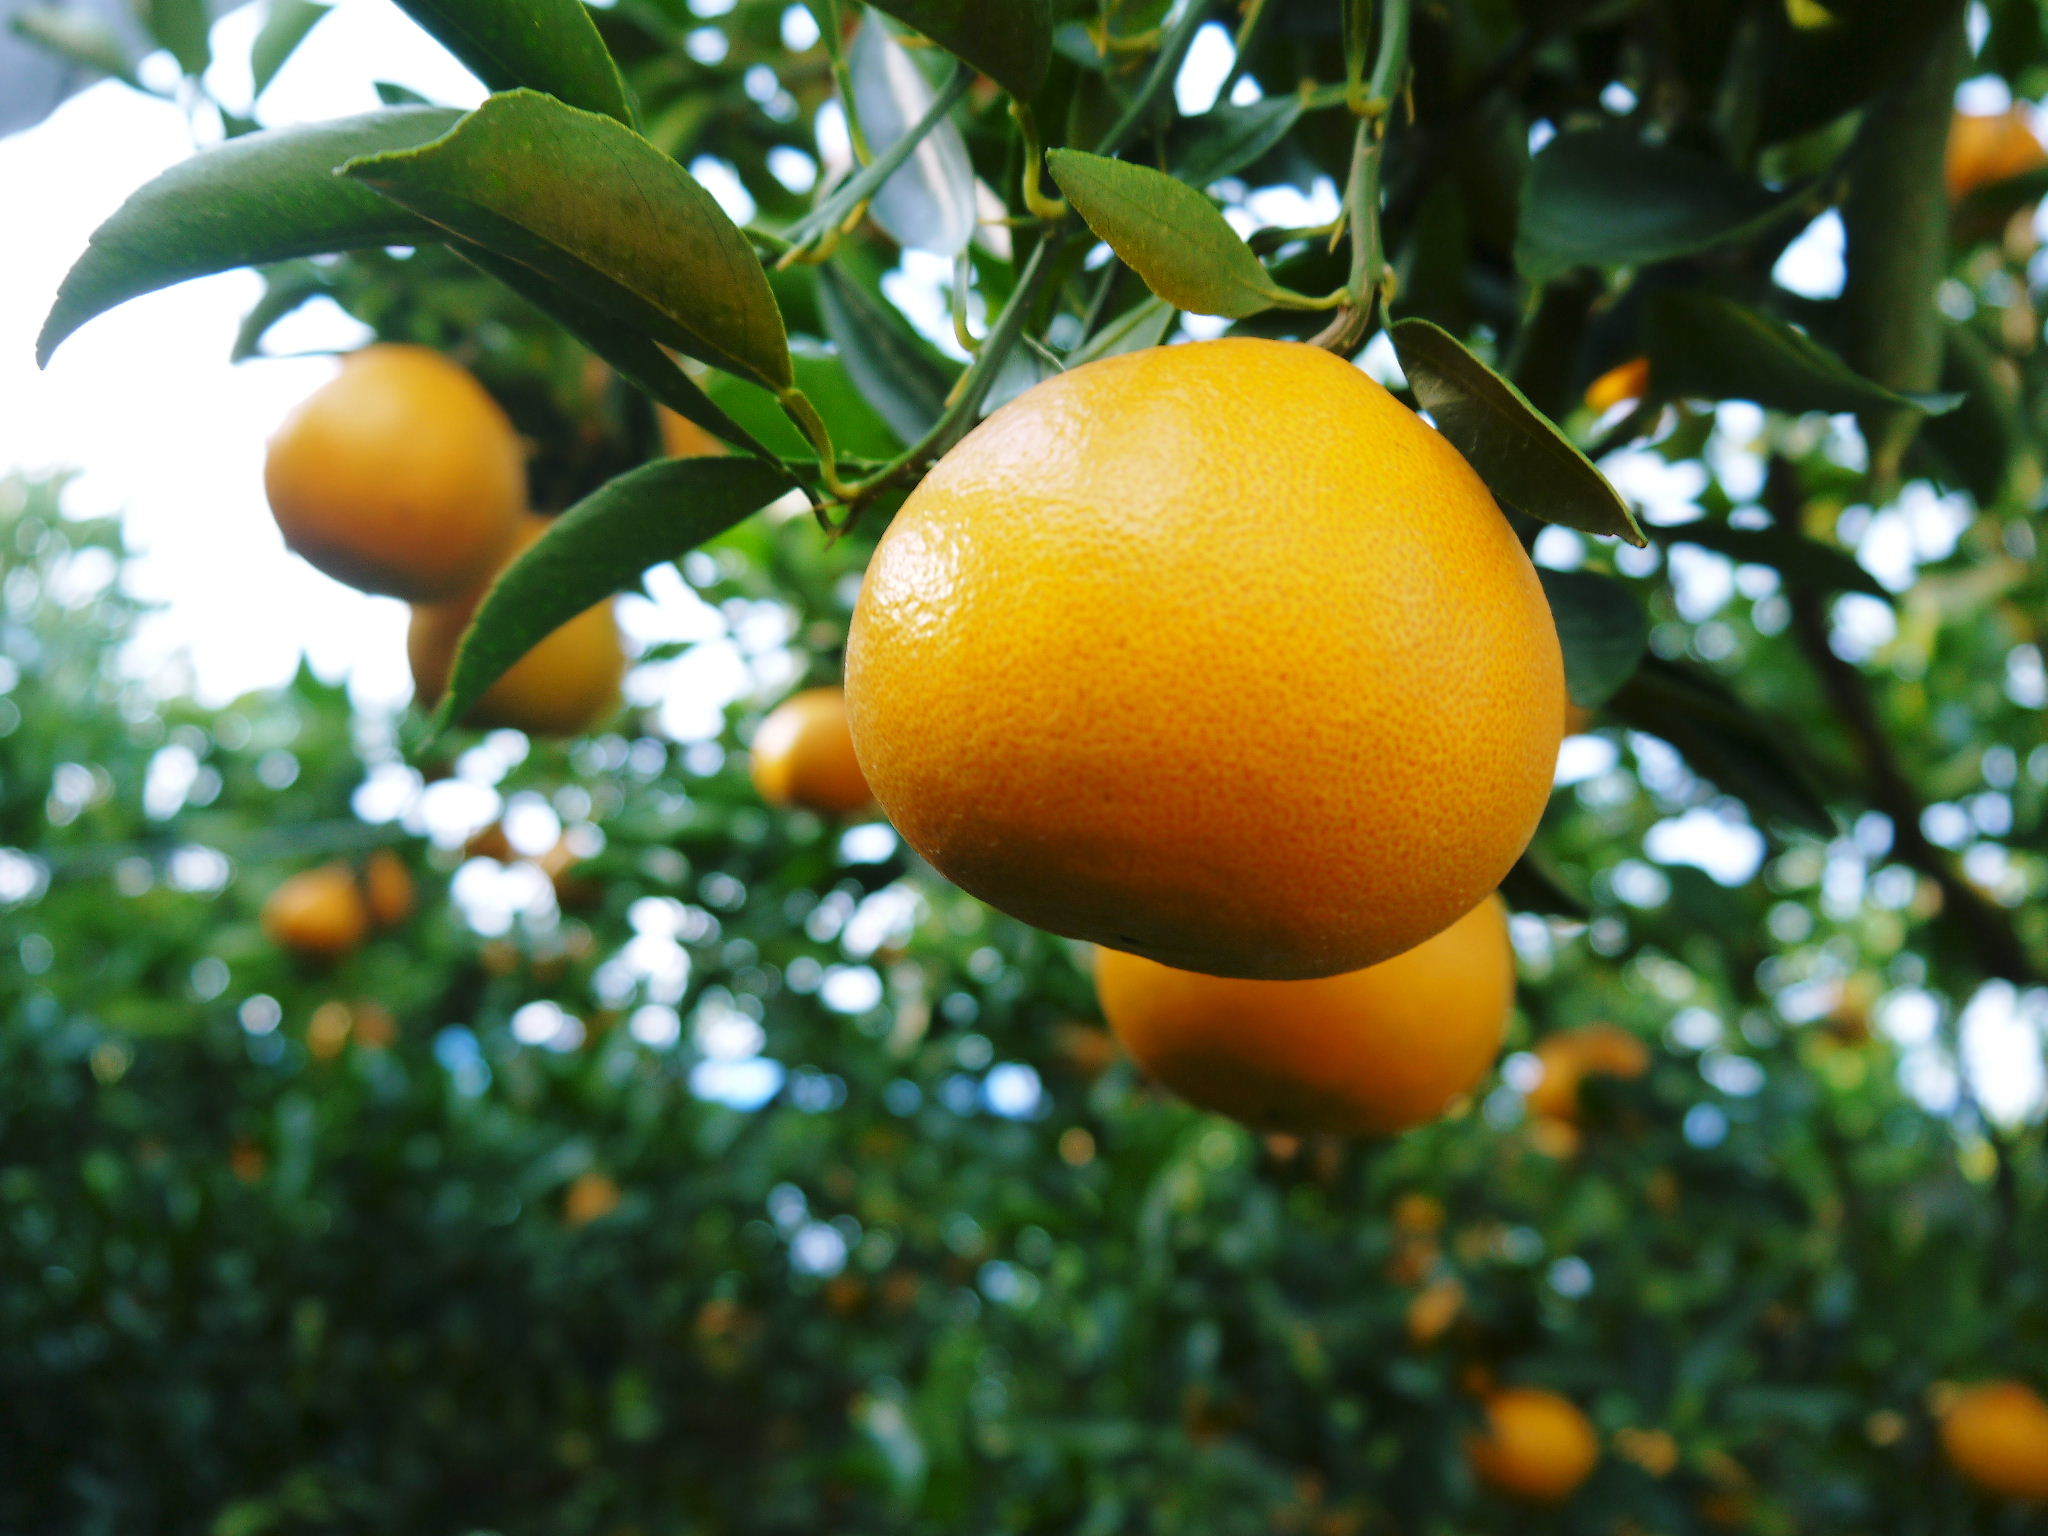 究極の柑橘『せとか』は今年も順調に色づいてきています！2月上旬の収穫へ向け美味しさを閉じ込めます！_a0254656_16435535.jpg